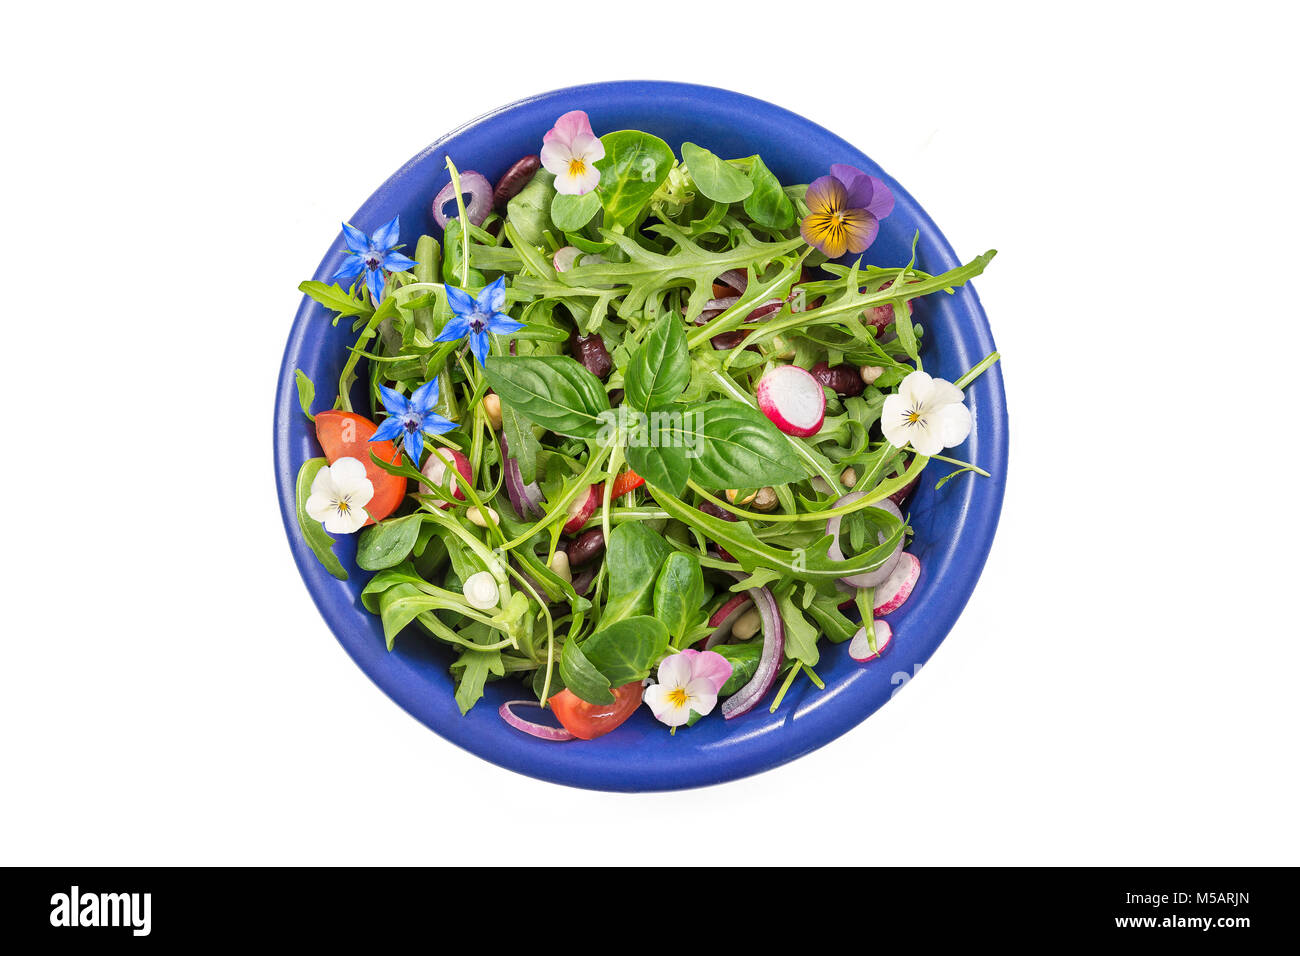 Frische Kraut Salat mit Blattgemüse und kapuzinerkresse Blumen in einem blauen Keramik Schüssel auf weißen serviert. Stockfoto